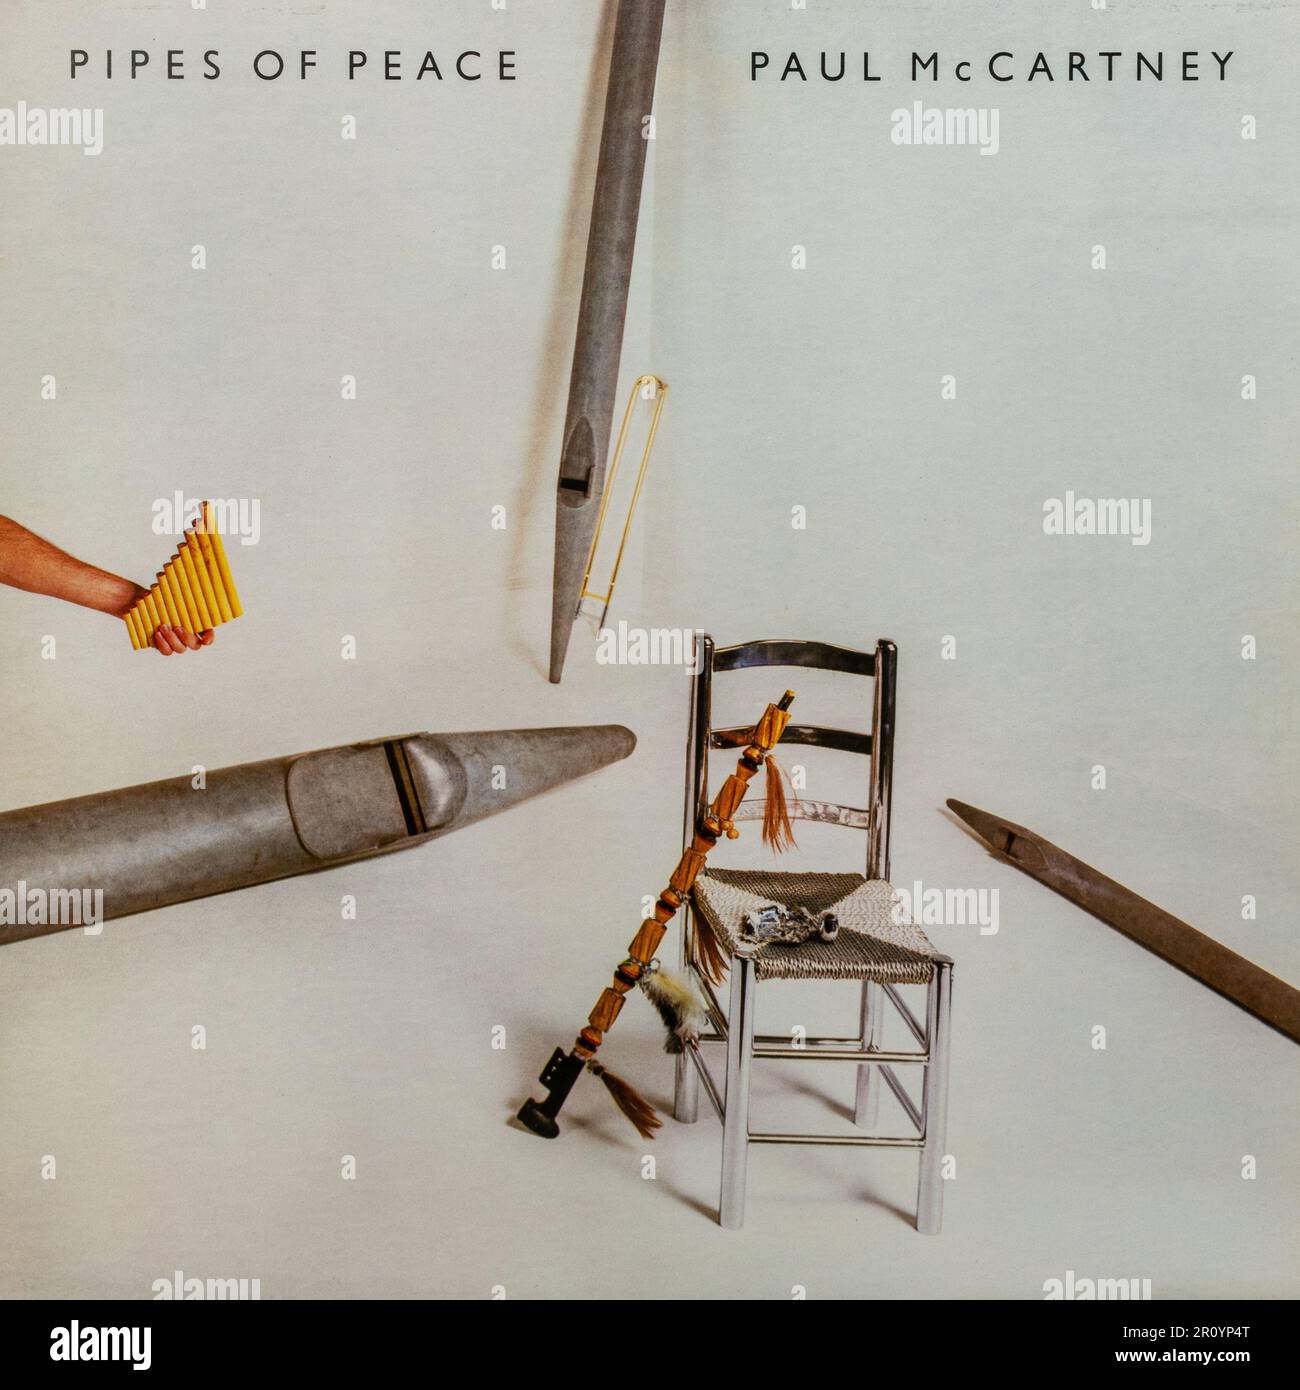 Pipes of Peace par Paul McCartney, couverture d'album de disques vinyles, Royaume-Uni Banque D'Images